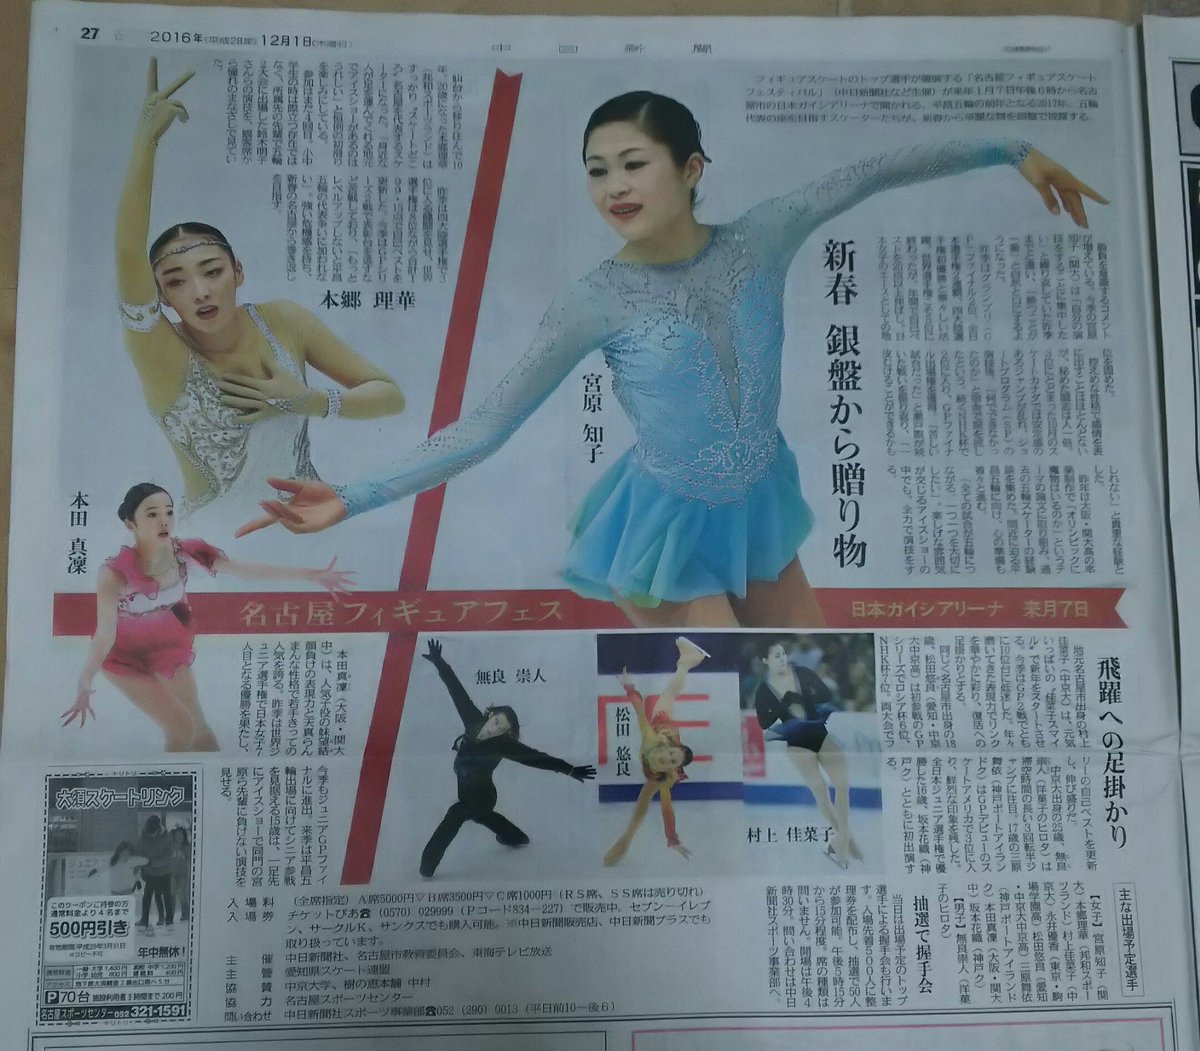 2017年名古屋フィギュアスケートフェスティバルの告知新聞に宮原知子が大きく取り上げられる